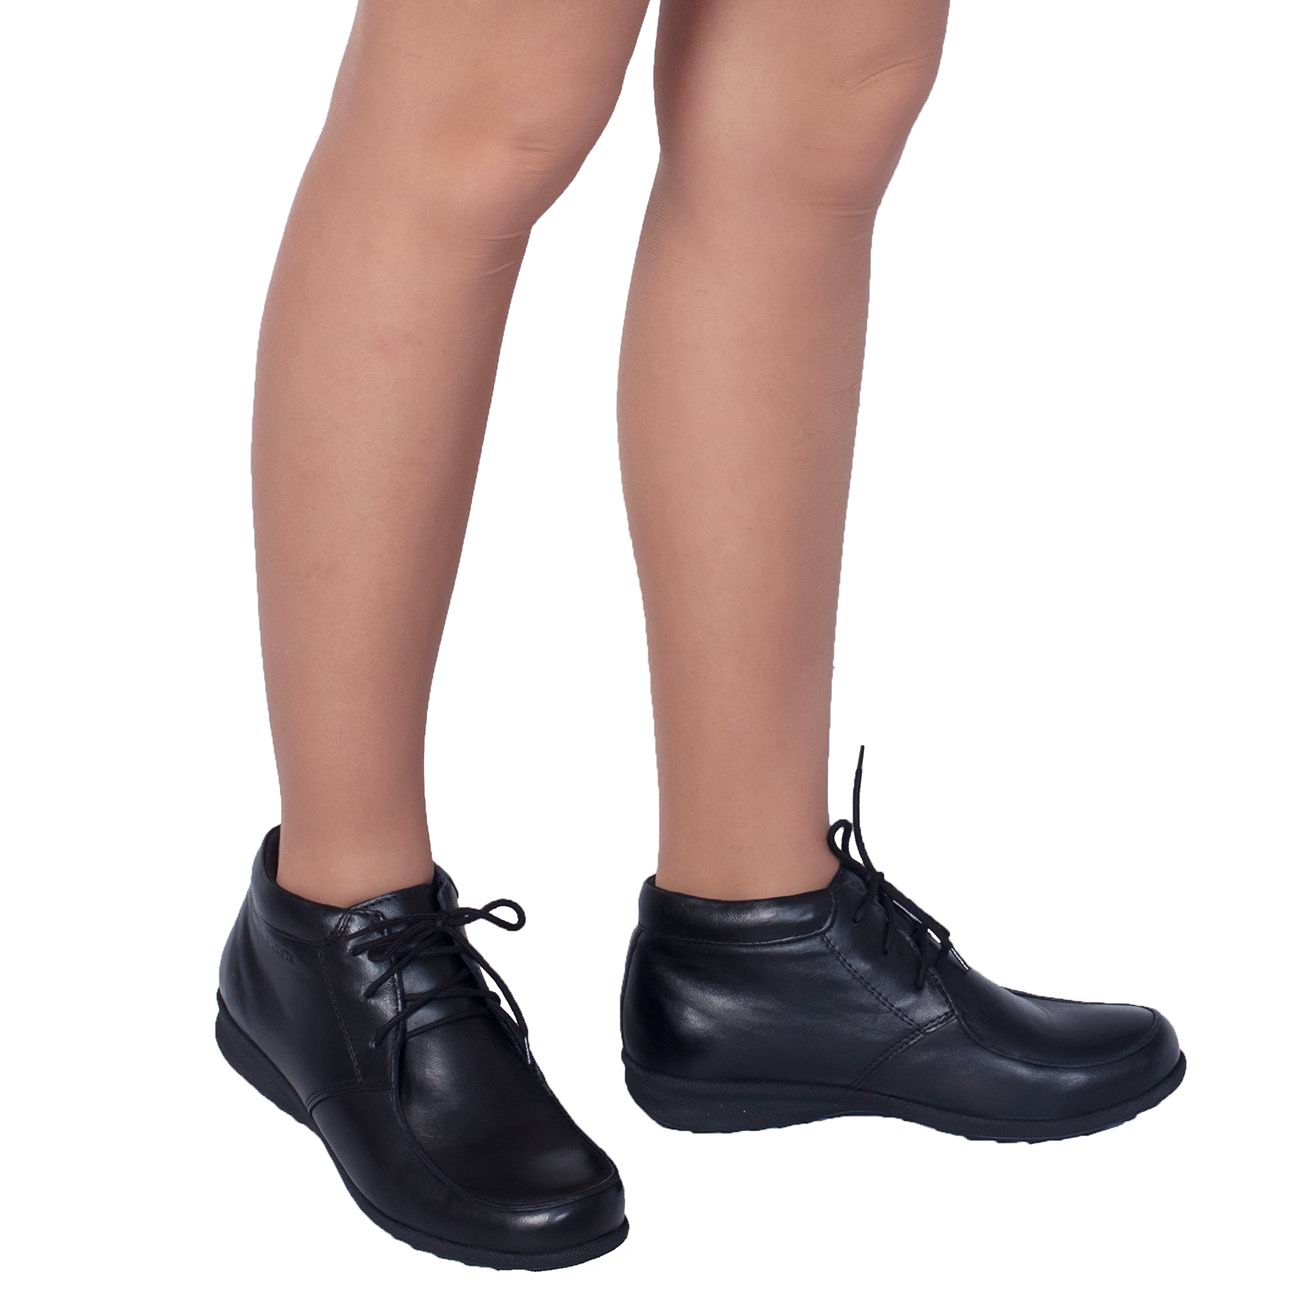 Вайлдберриз туфли женские кожаные на каблуках. Валберис, женские осенние ботинки. Валберис полуботинки женские демисезонные. Женские ботиночки на шнурках. Ботинки на плоской подошве.